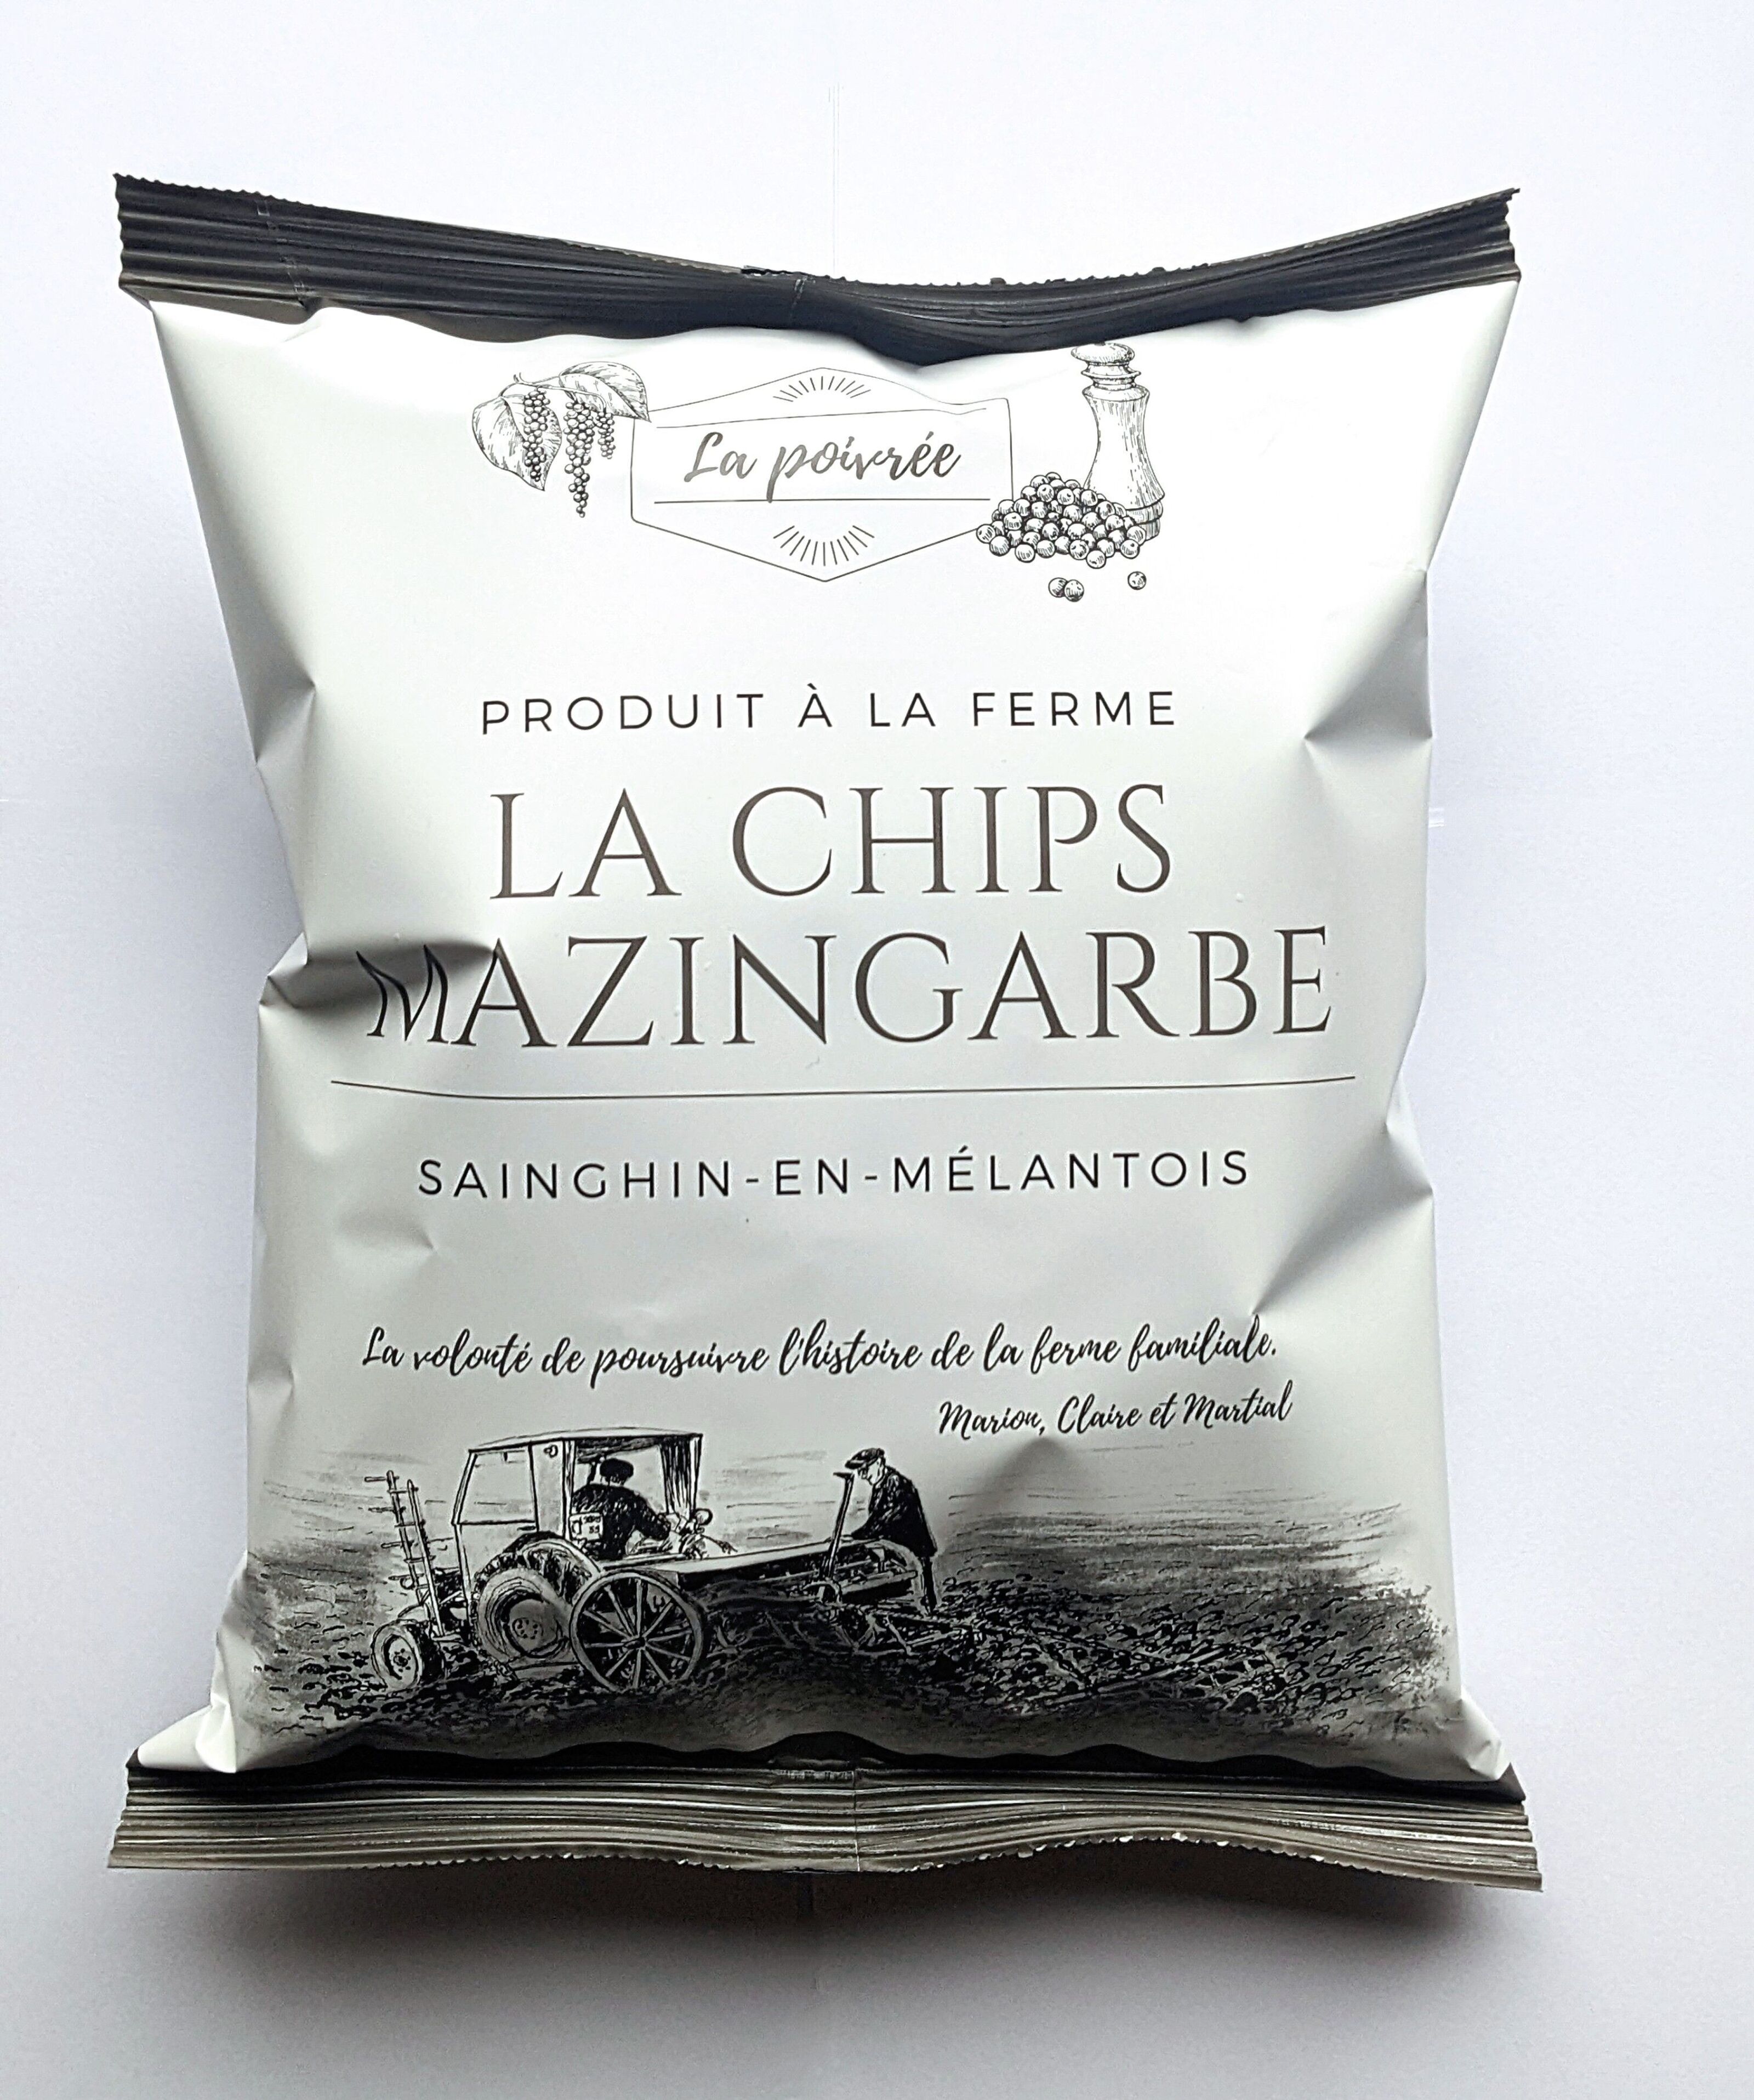 Achat La Chips Mazingarbe - Chips fermière - L'authentique en gros